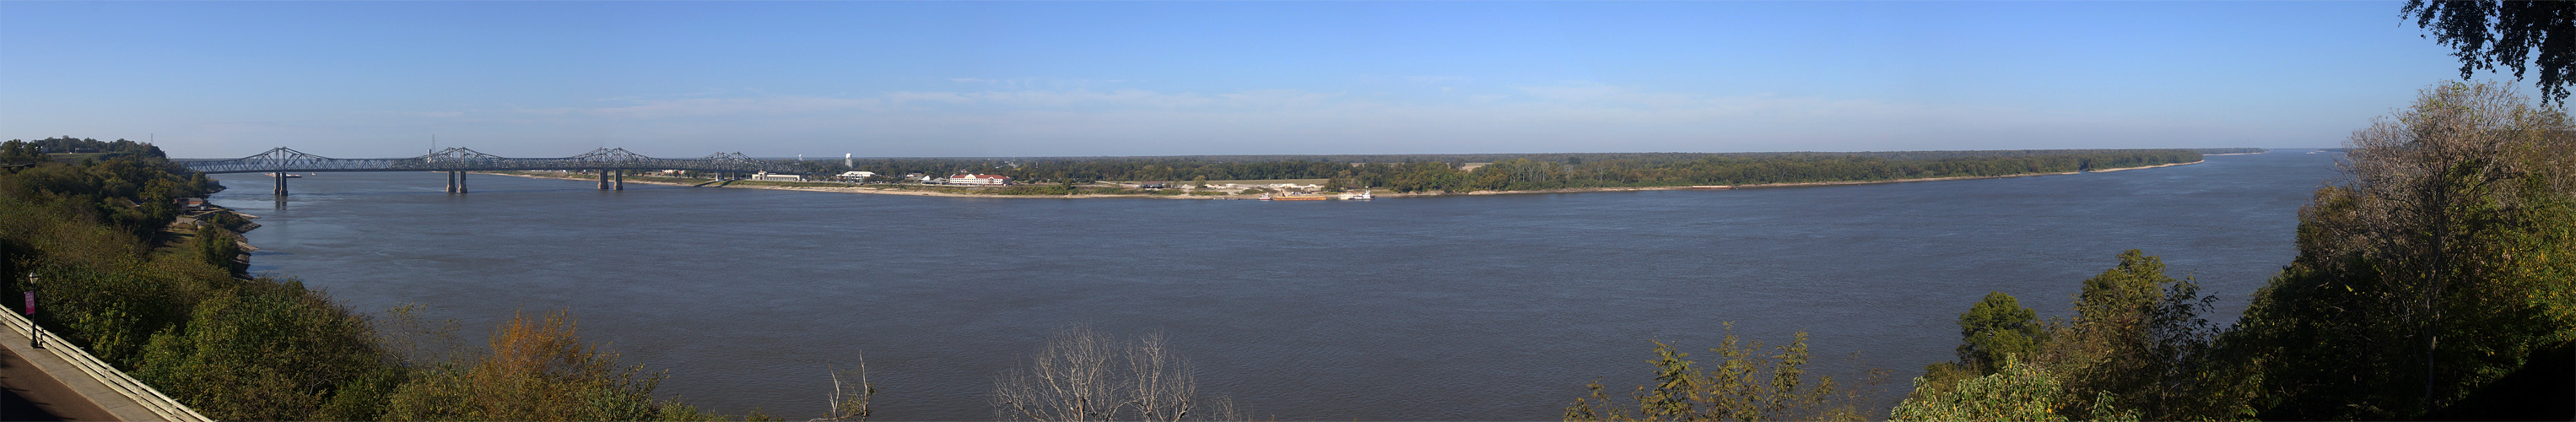 Photo panoramique du Mississippi à Natchez